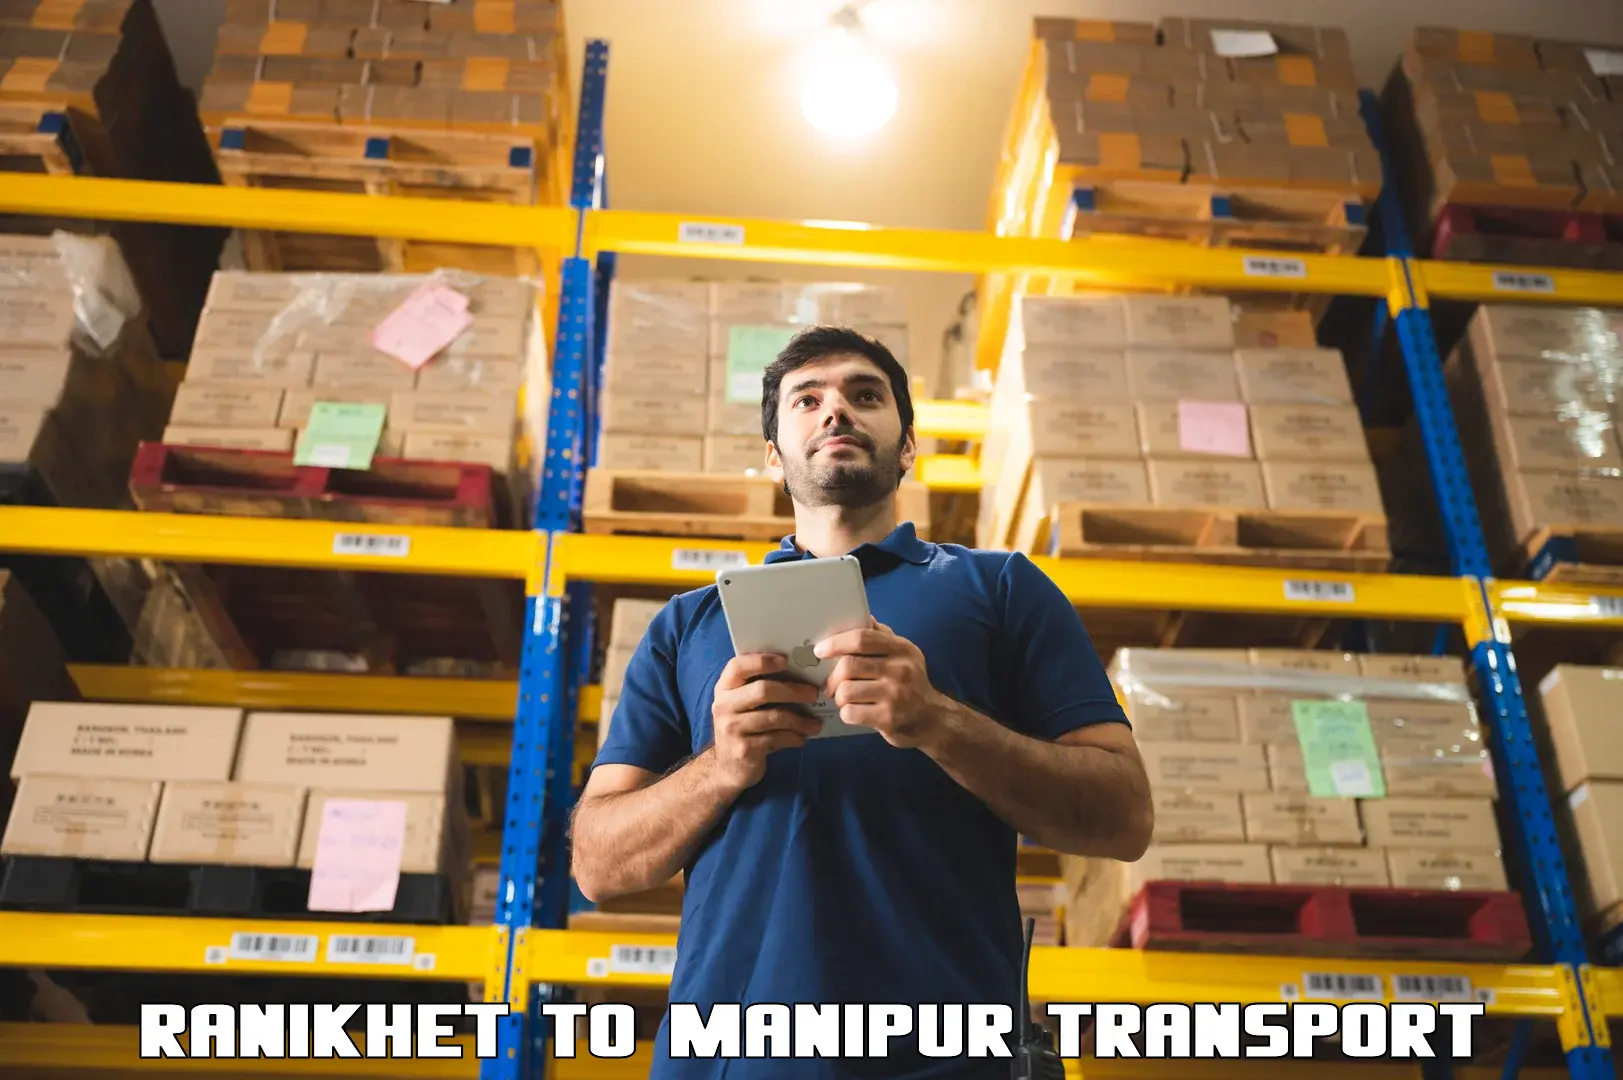 Commercial transport service Ranikhet to Manipur